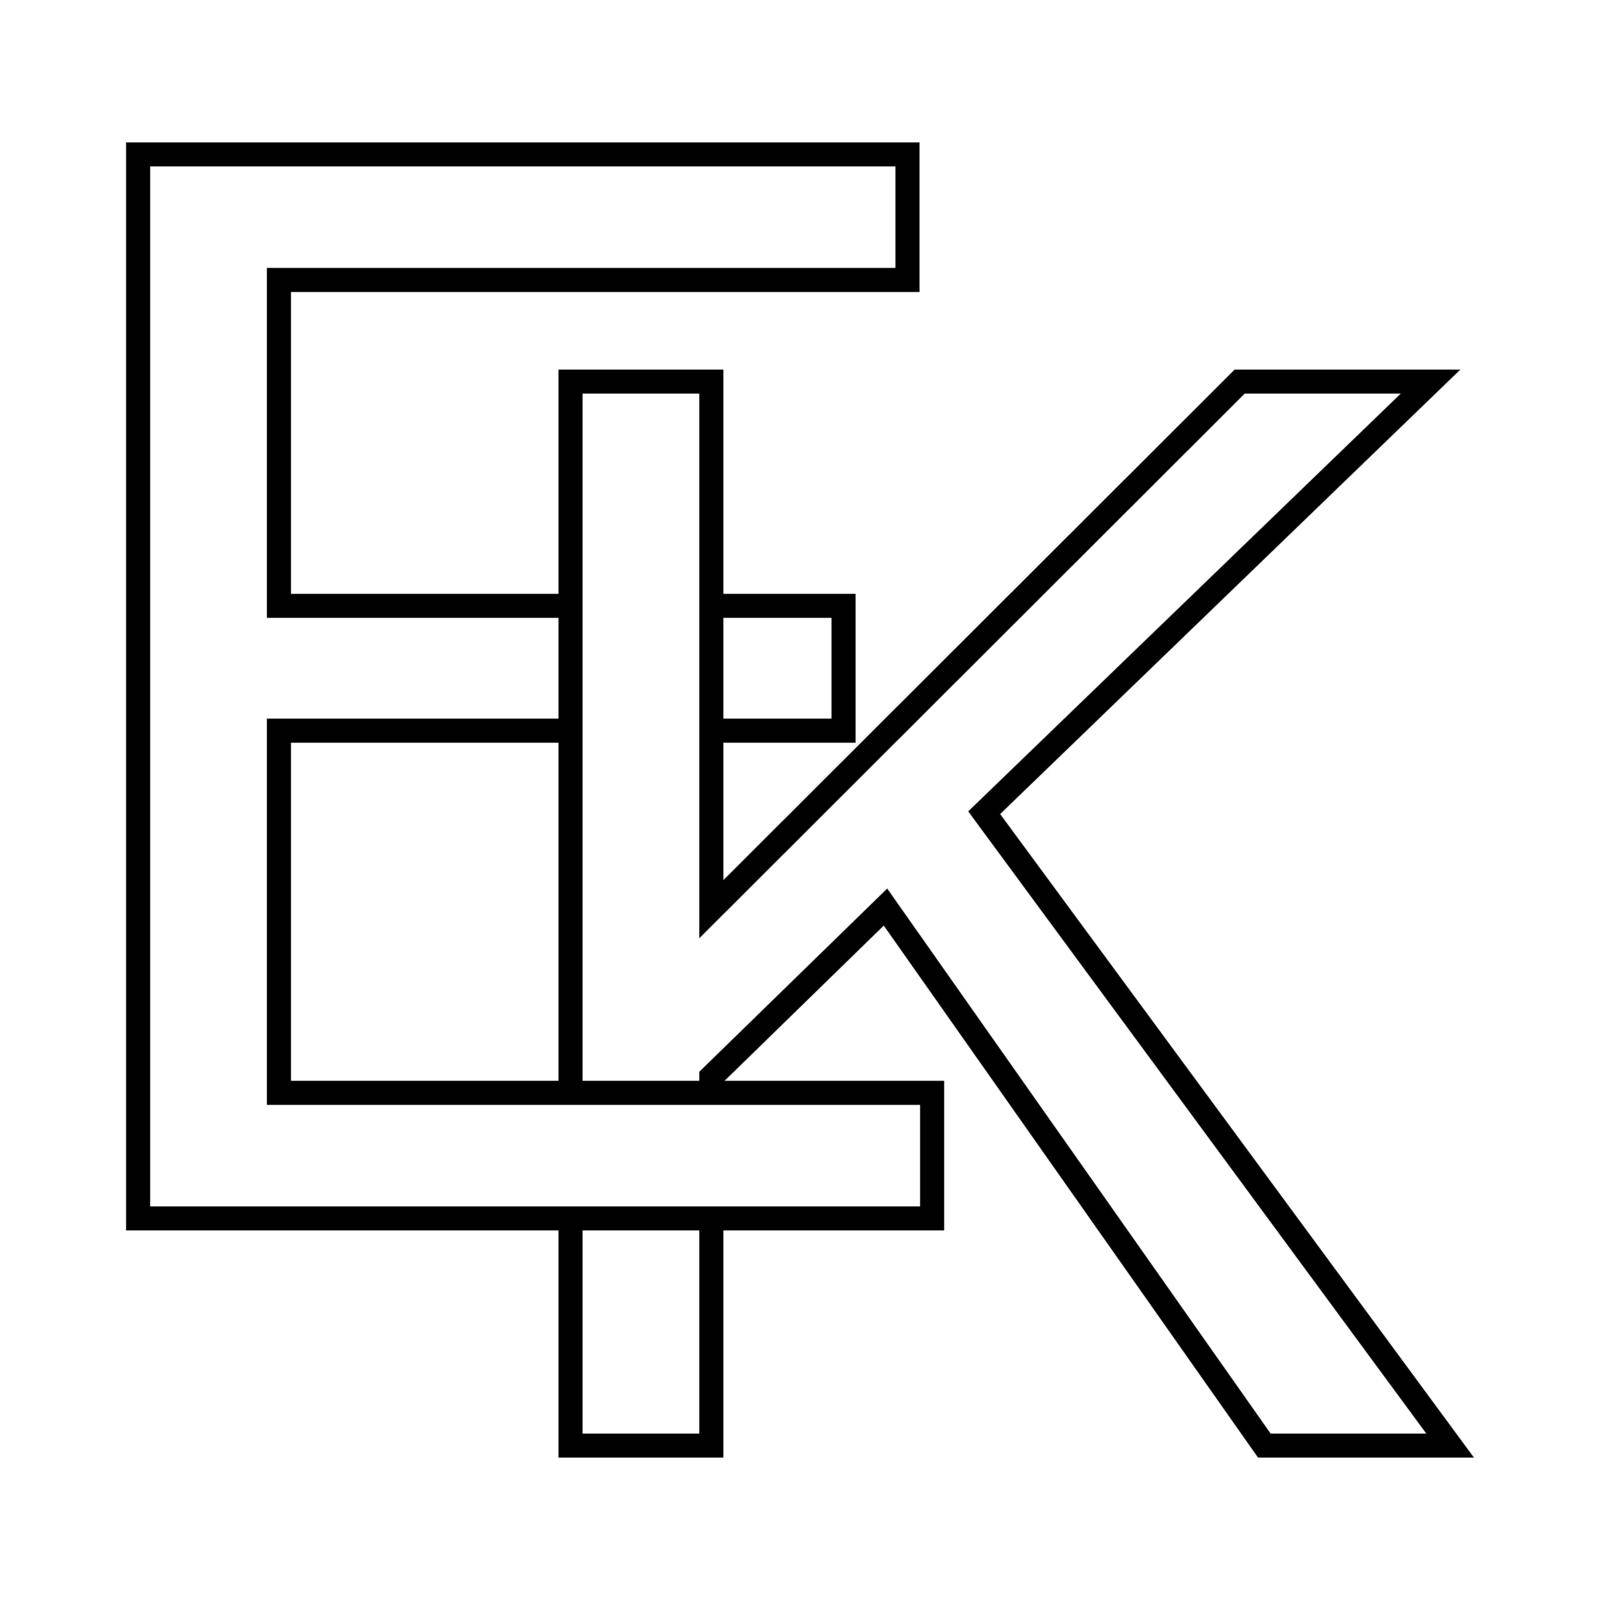 Logo sign ek ke icon, nft ek interlaced, letters e k by koksikoks